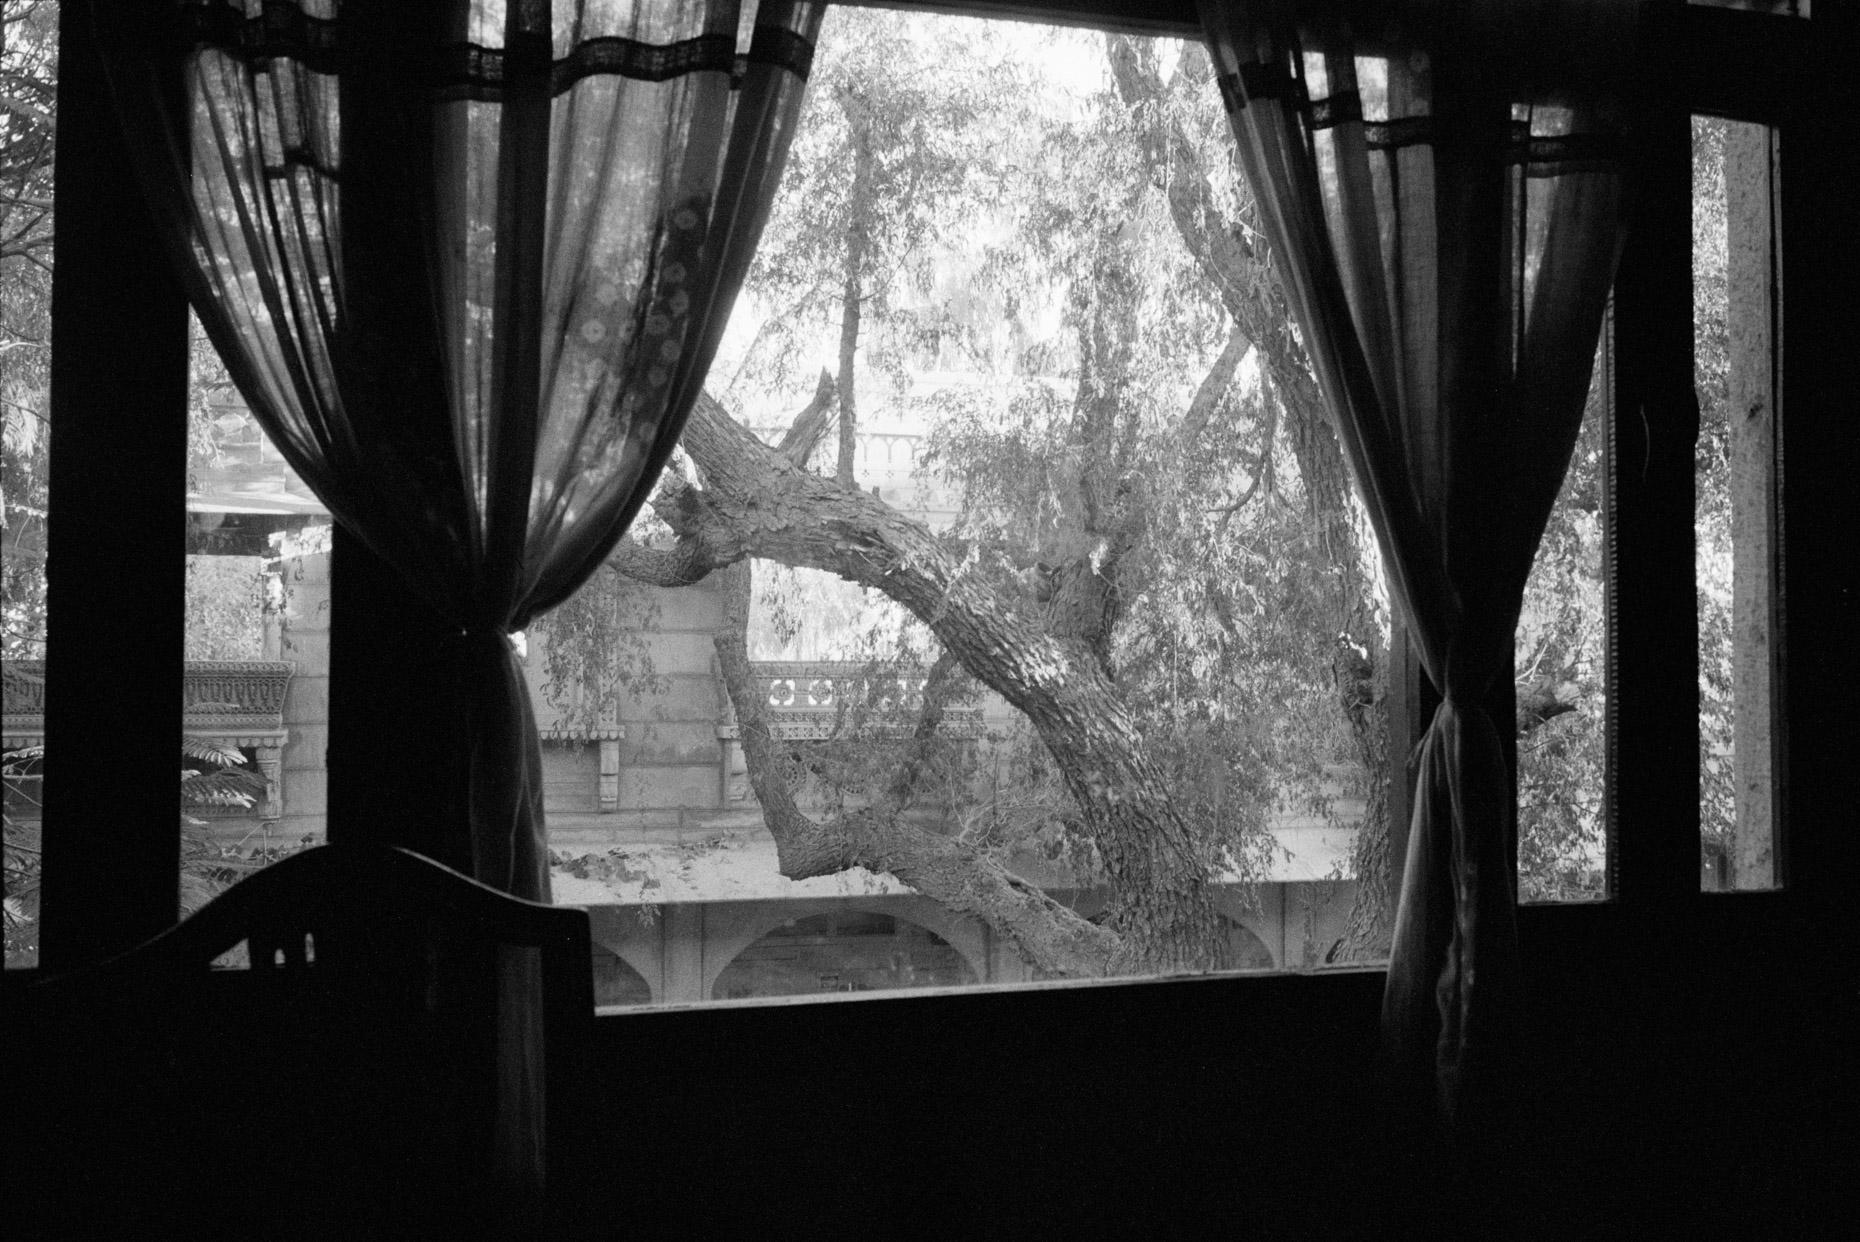 Dining Room Curtains, Jaisalmer, 2003